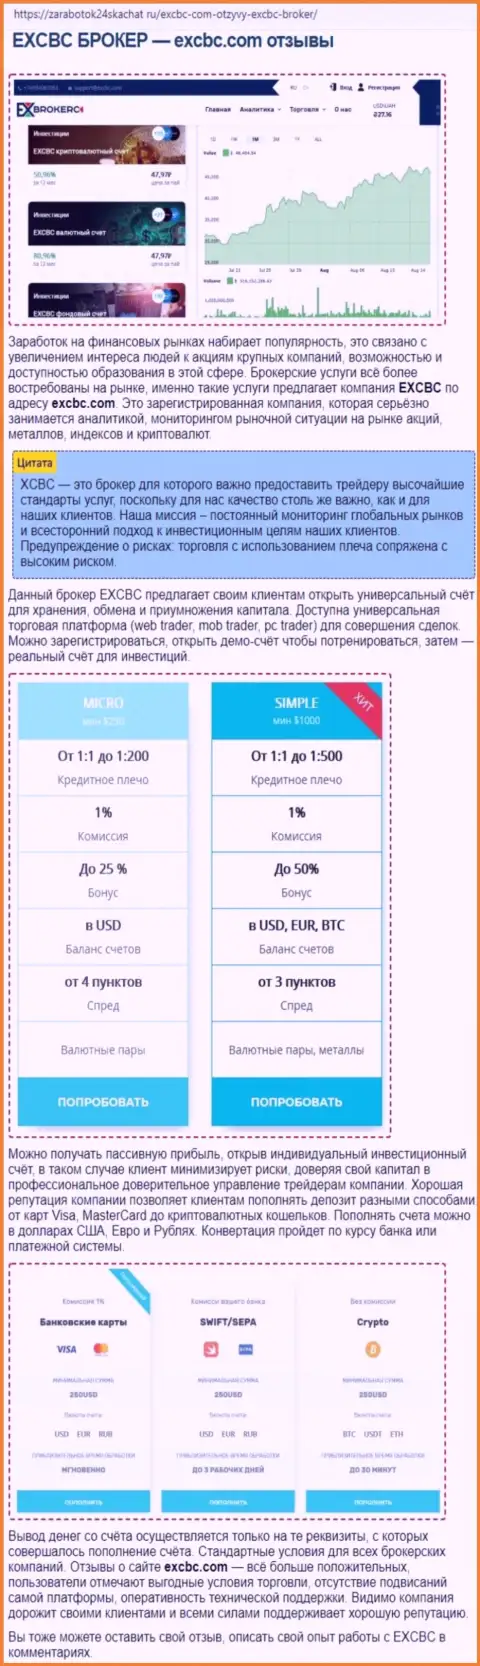 Сведения об Форекс брокере EXCBC в статье на онлайн-сервисе zarabotok24skachat ru